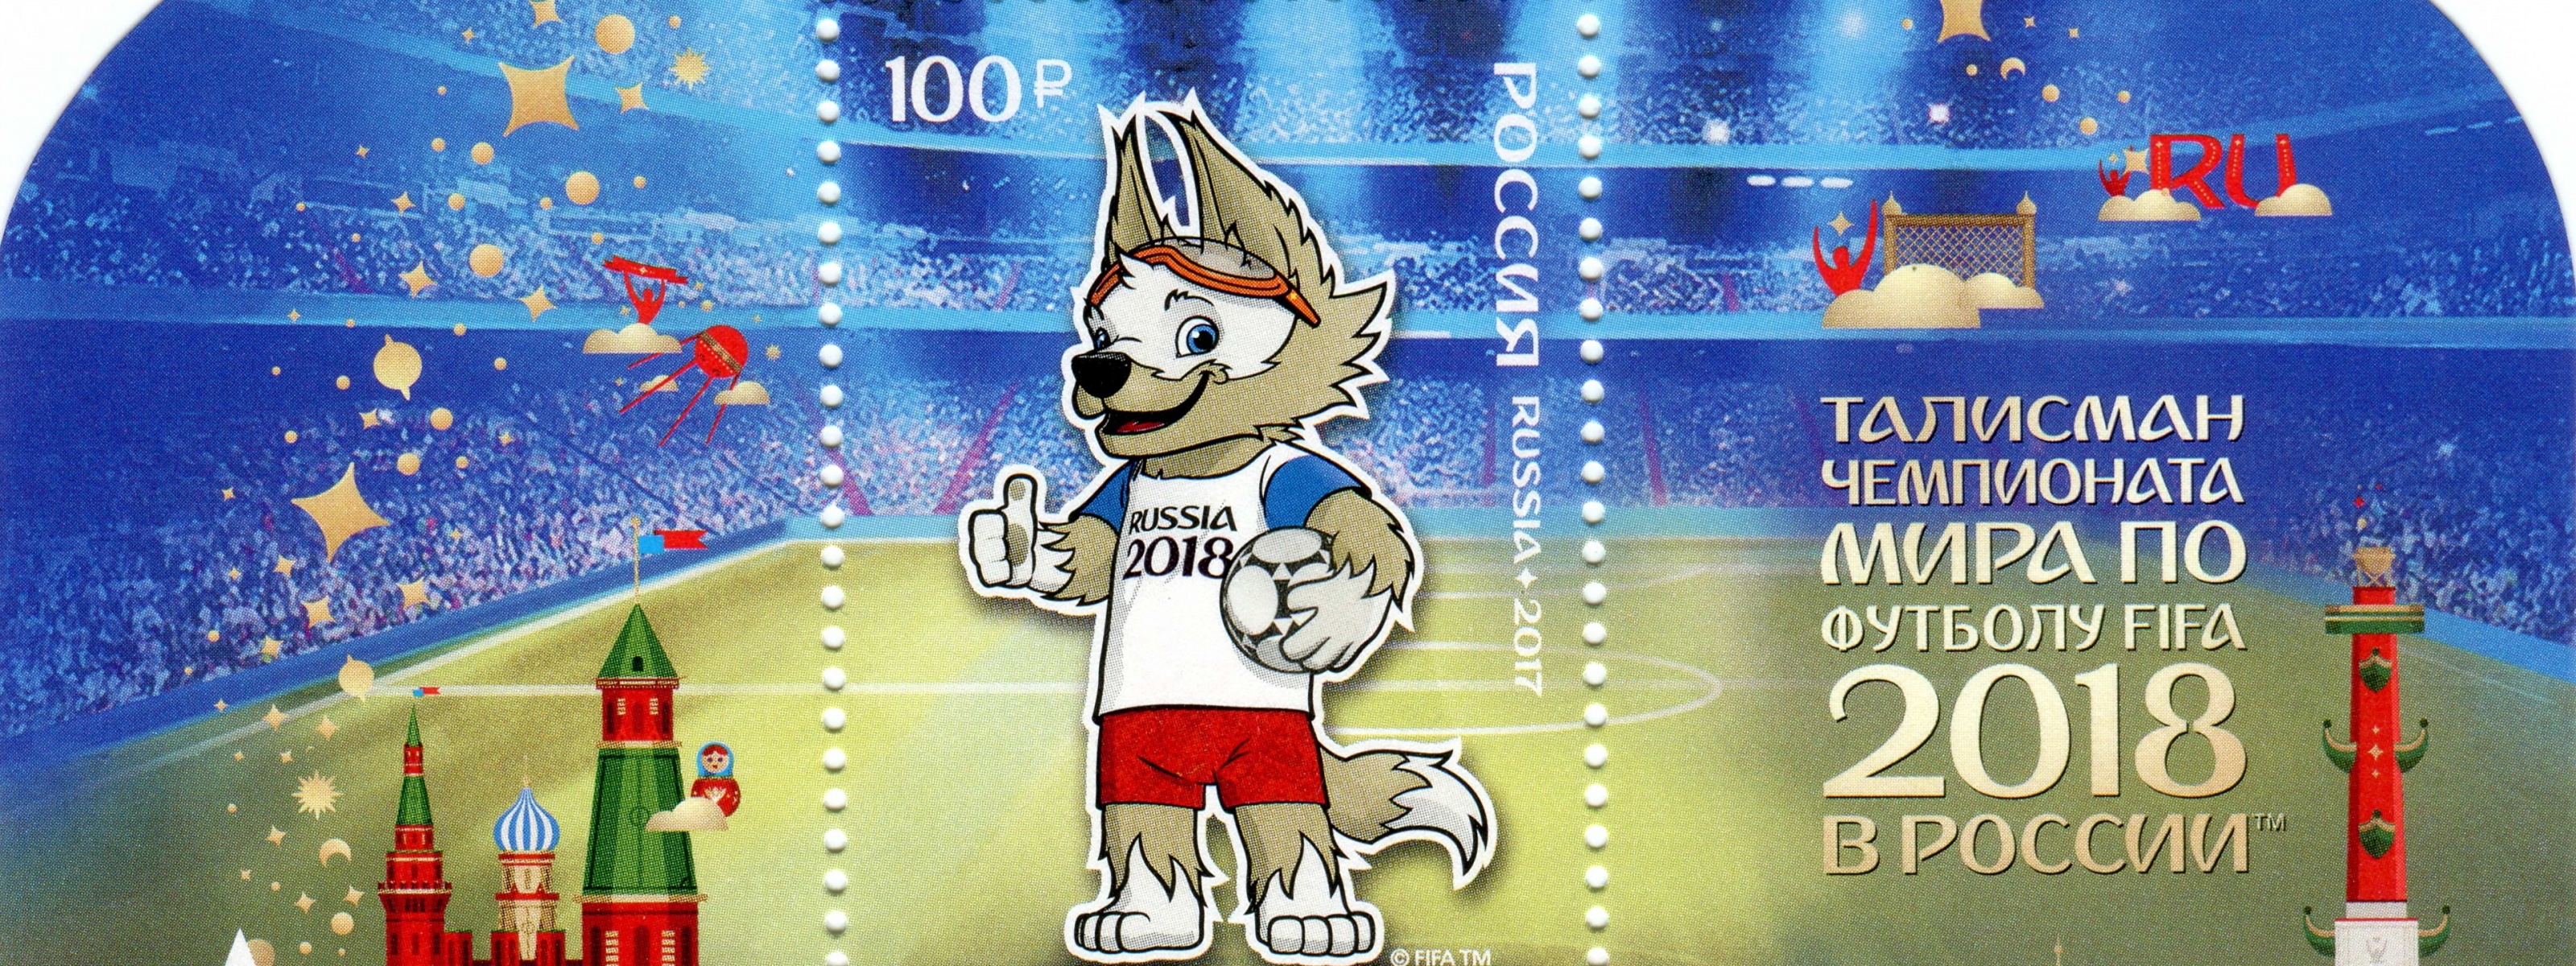 Fifa World Cup 2018 Zabivaka Mascot